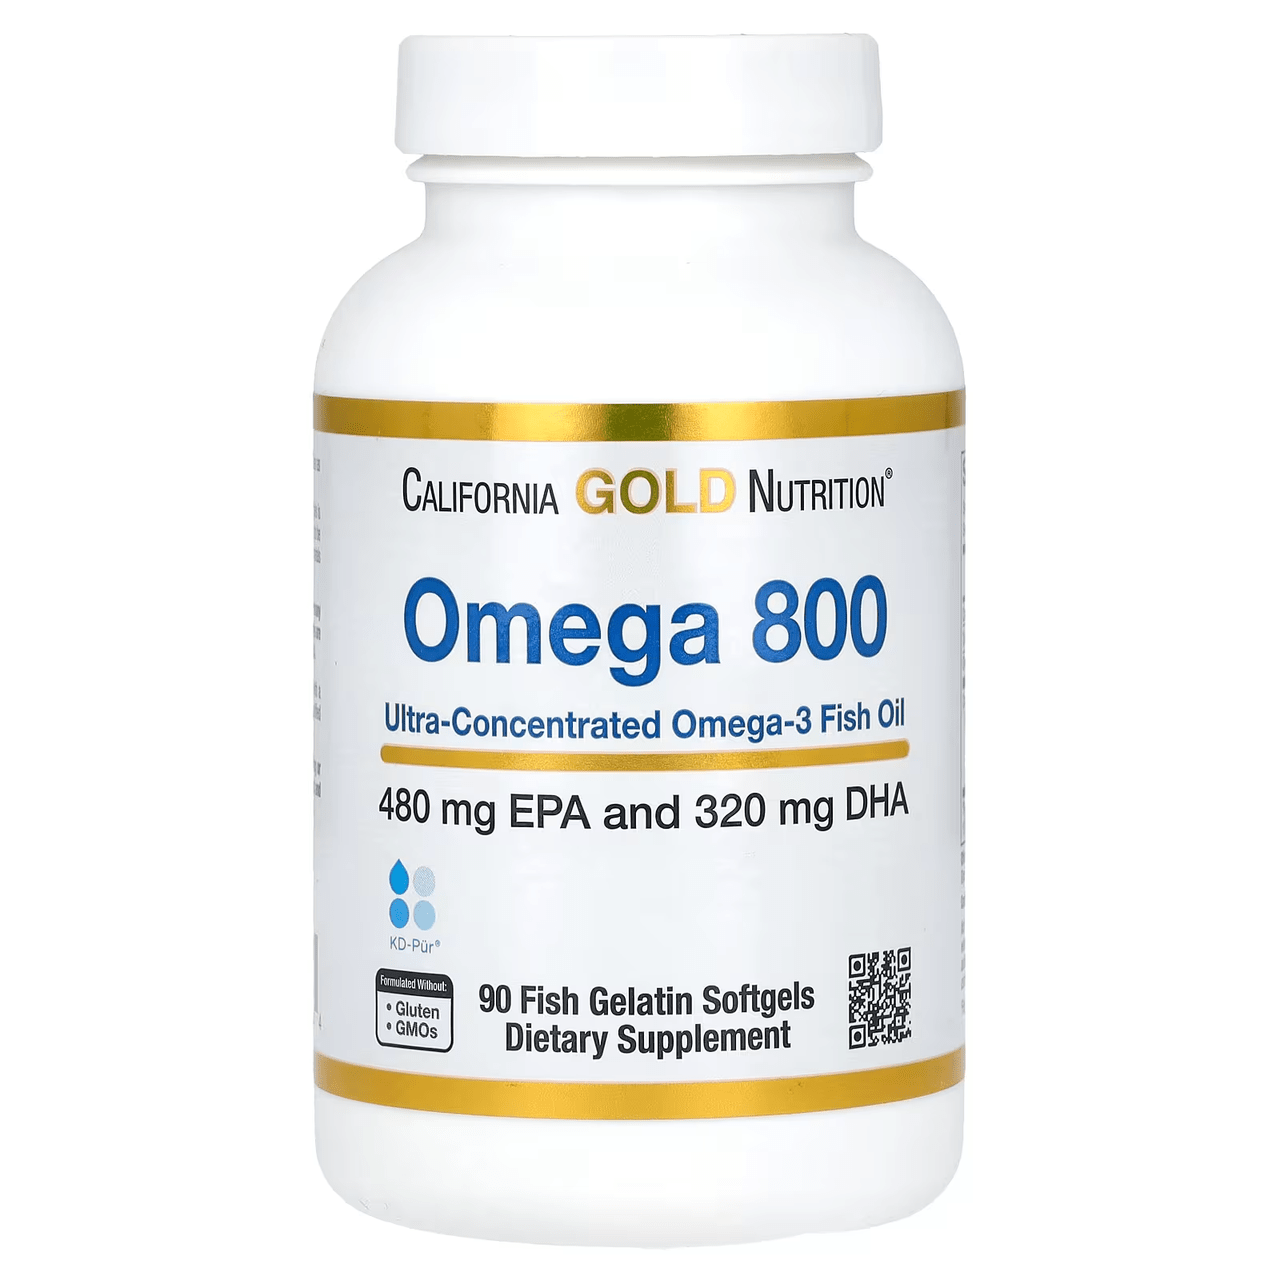 California Gold Nutrition California Gold Nutrition Omega 800 Fish Oil (480 EPA/320 DHA) 90 softgels, , 